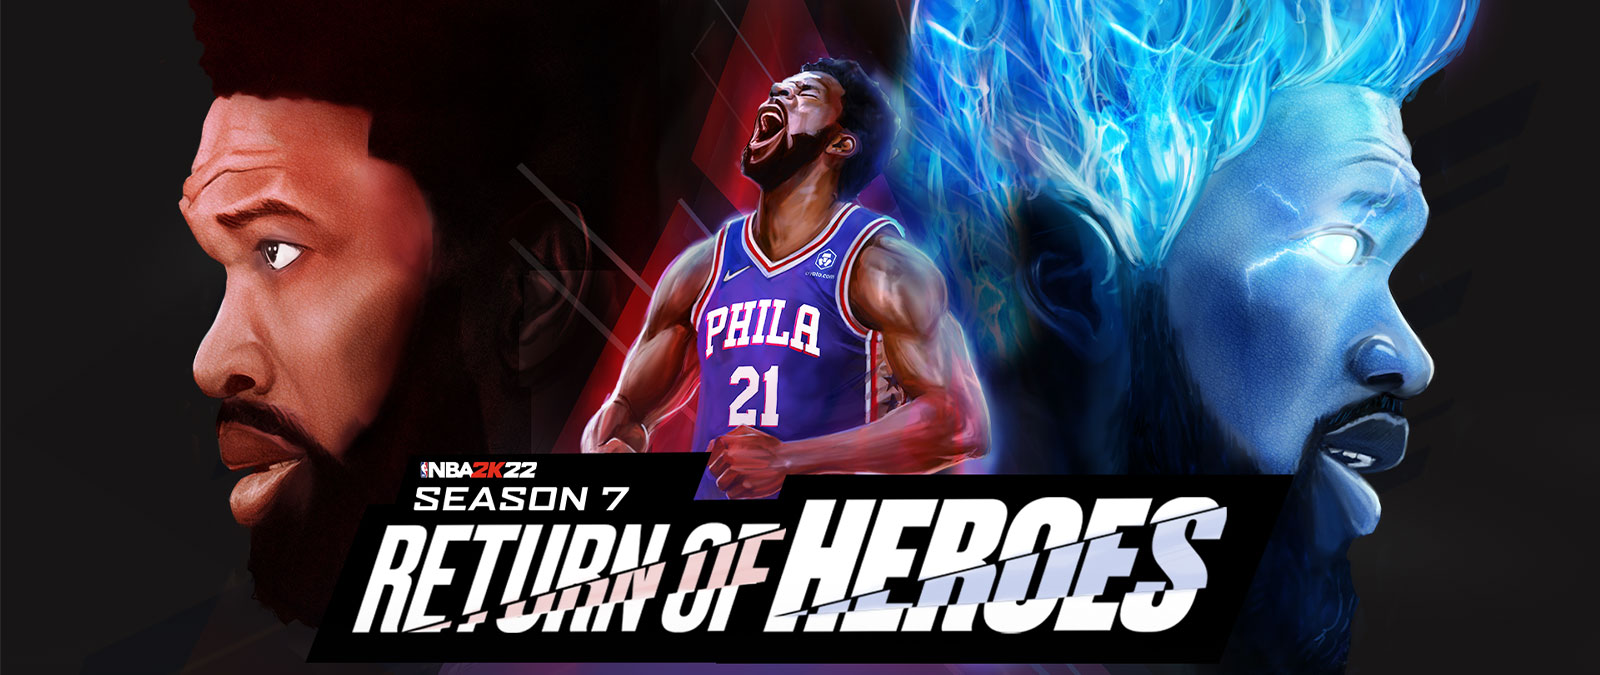 『NBA 2K22、シーズン 7: リターン オブ ヒーロー』では、フィラデルフィアの選手が空に向かって叫び、青い炎をあげてパワーアップします。